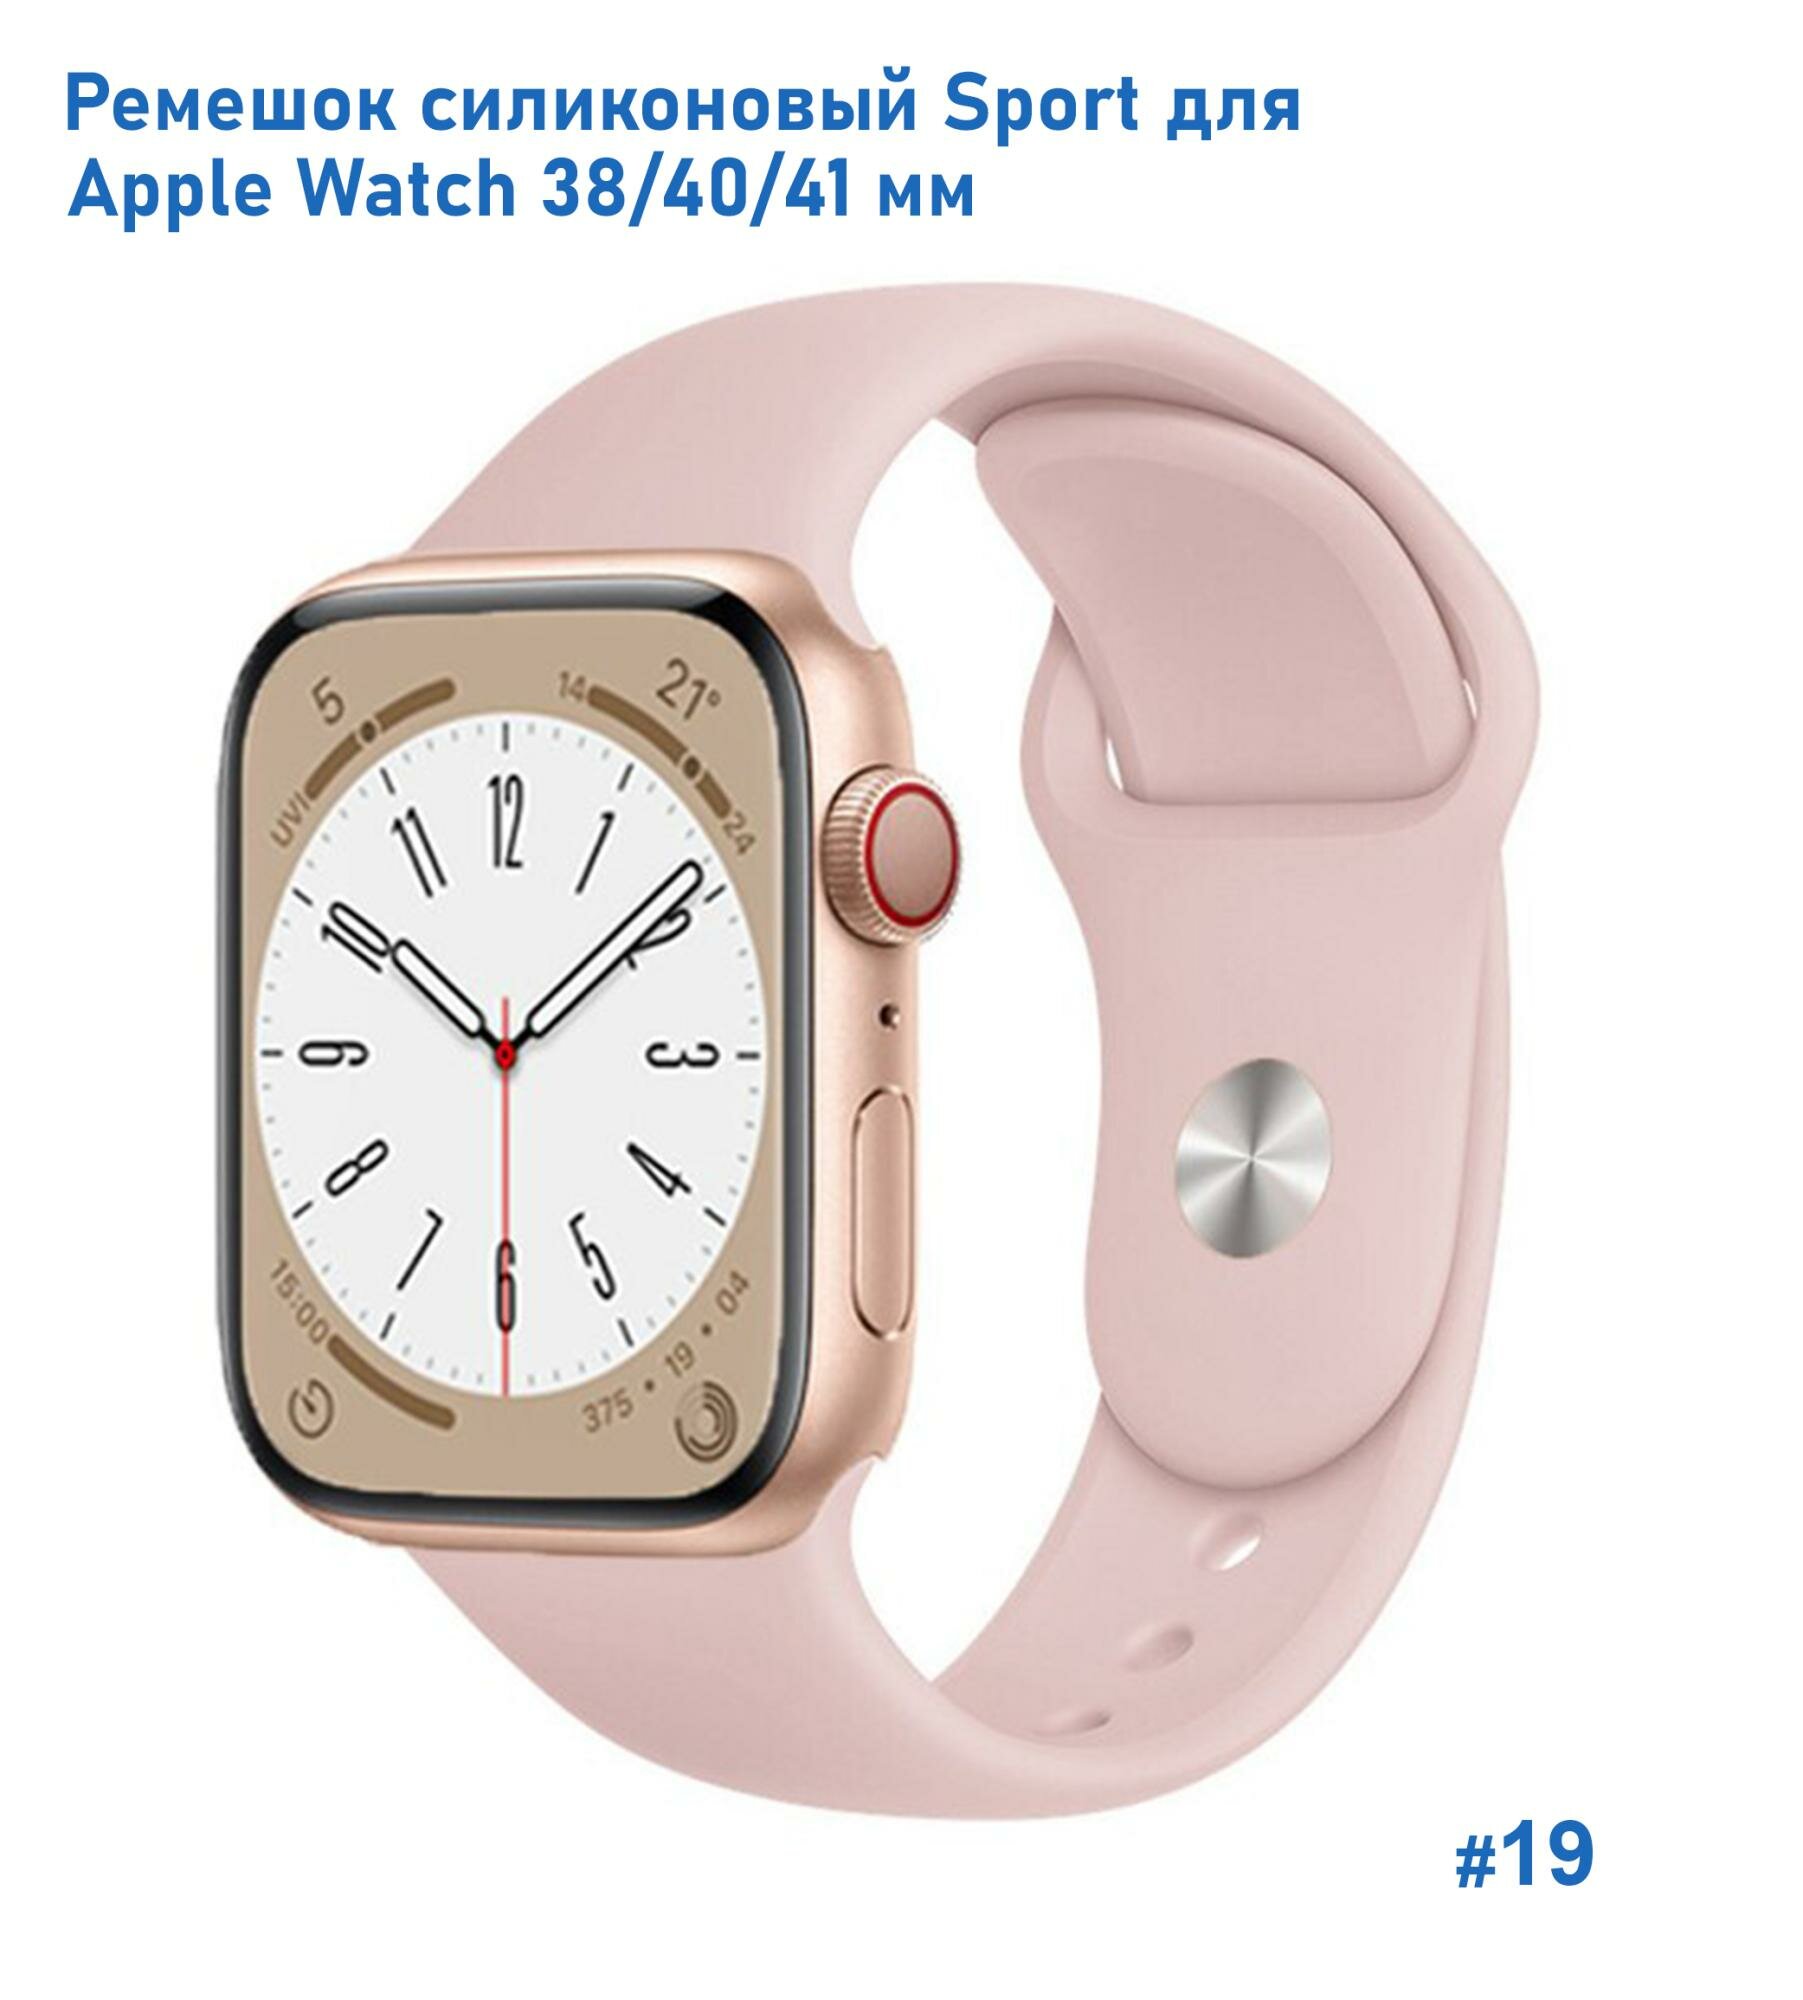 Ремешок силиконовый Sport для Apple Watch 38/40/41 мм, на кнопке, пудровый (19)